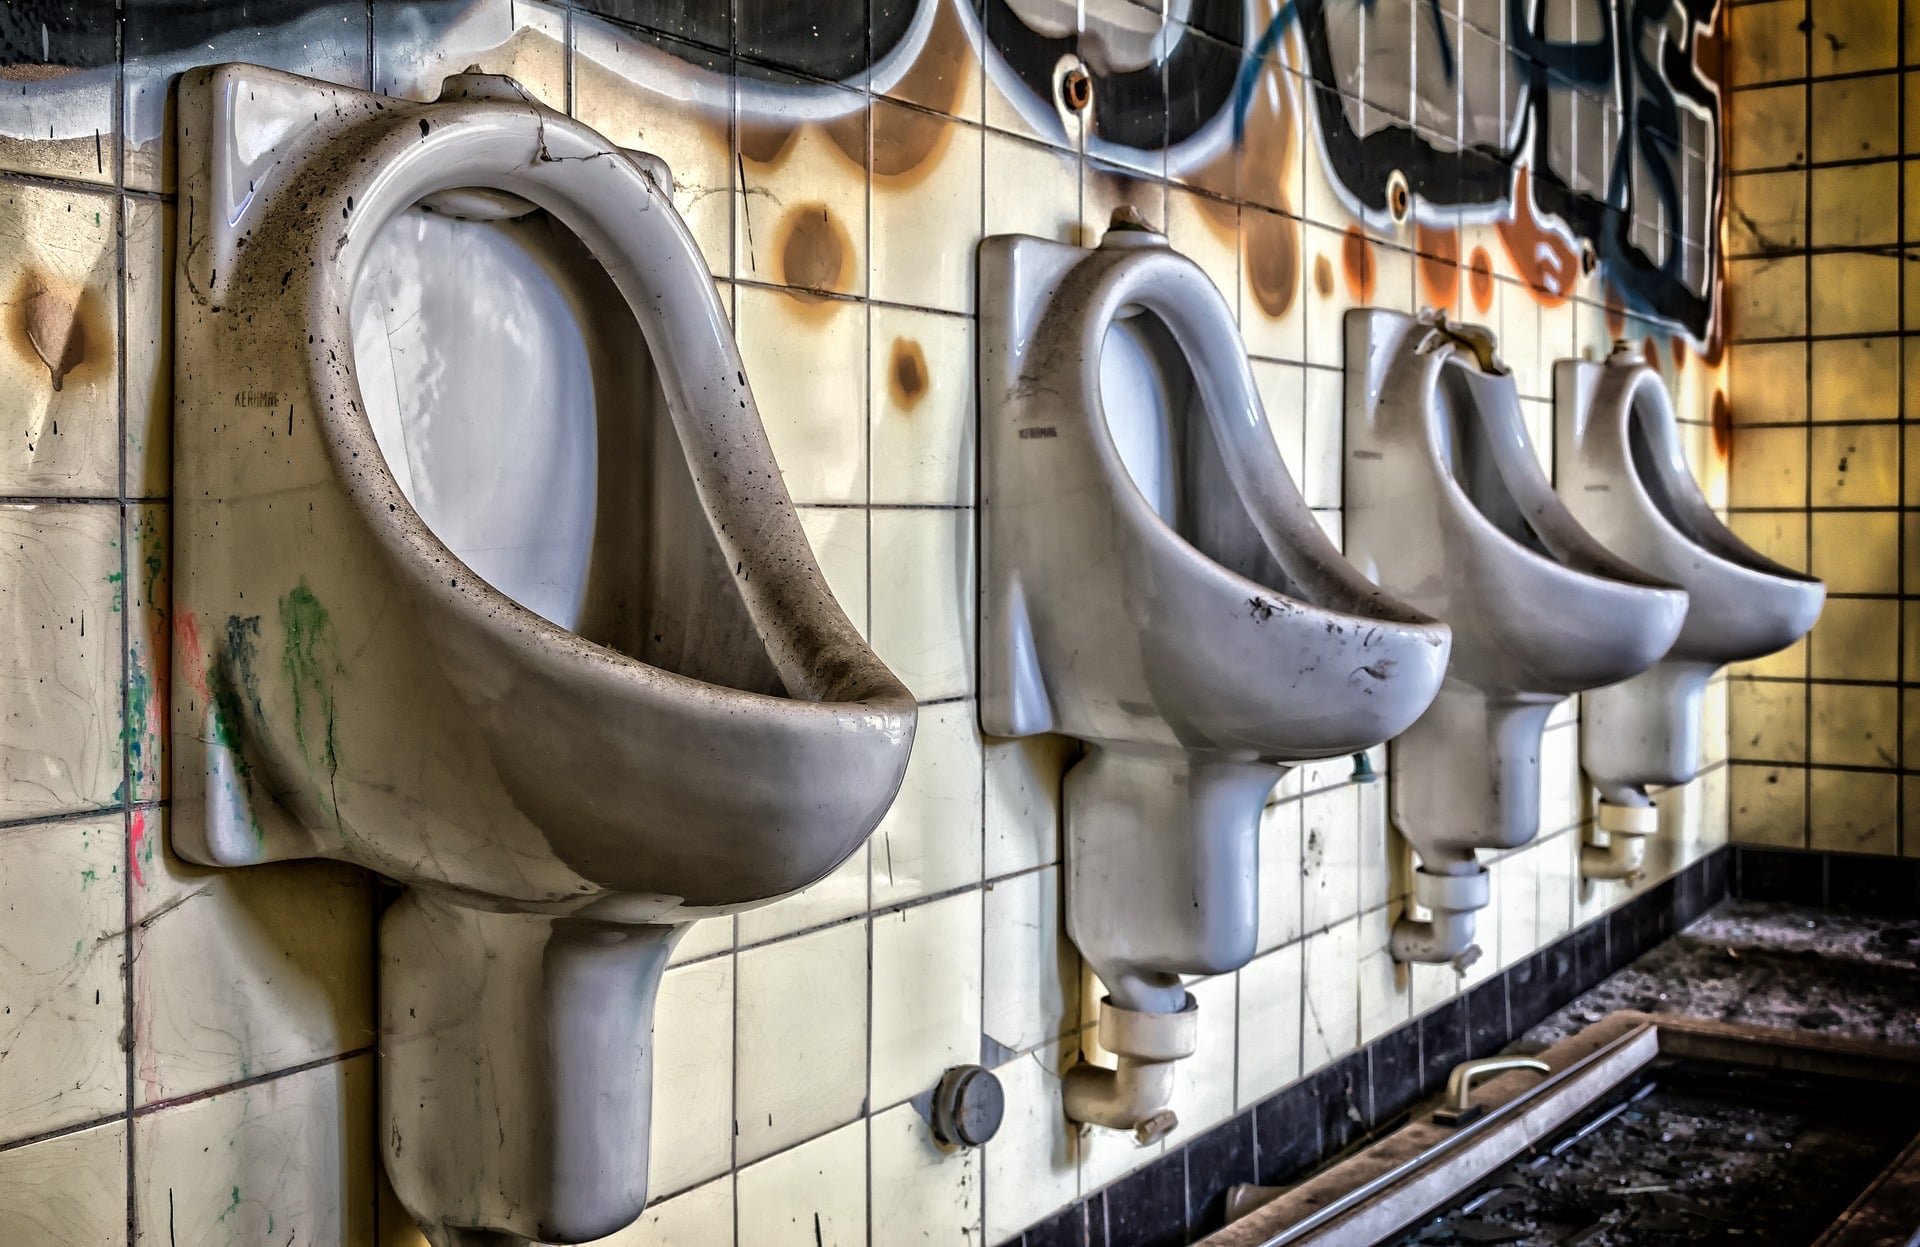 Žena proměnila opuštěné veřejné záchody v elegantní dům